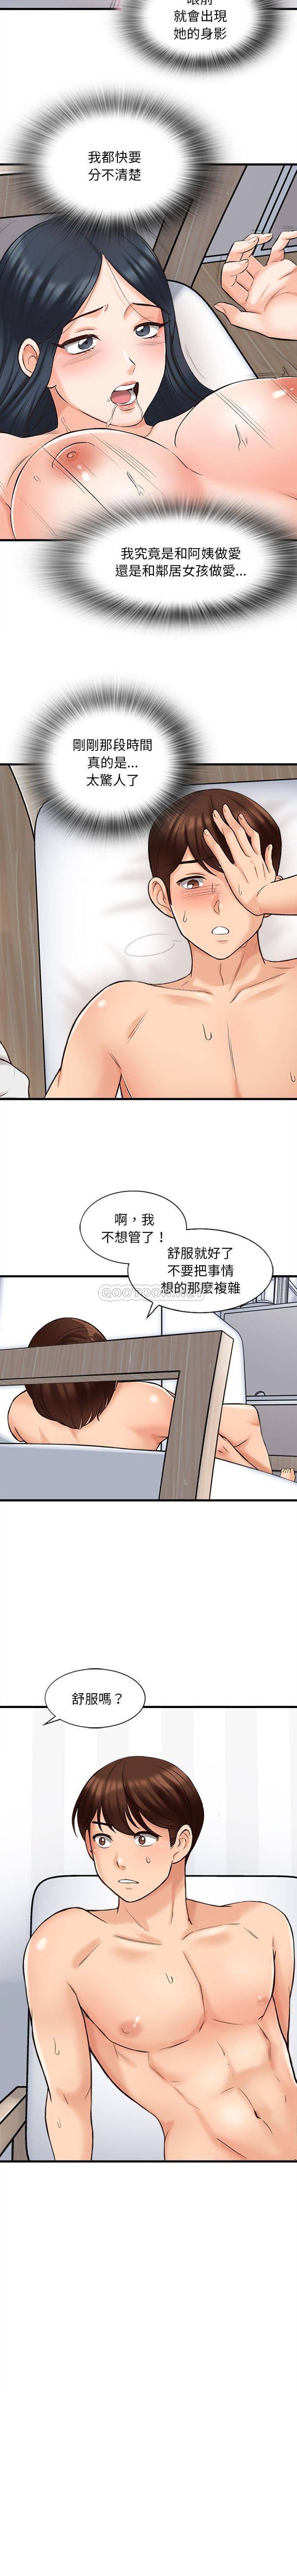 韩国污漫画 幸福公寓 第7话 7